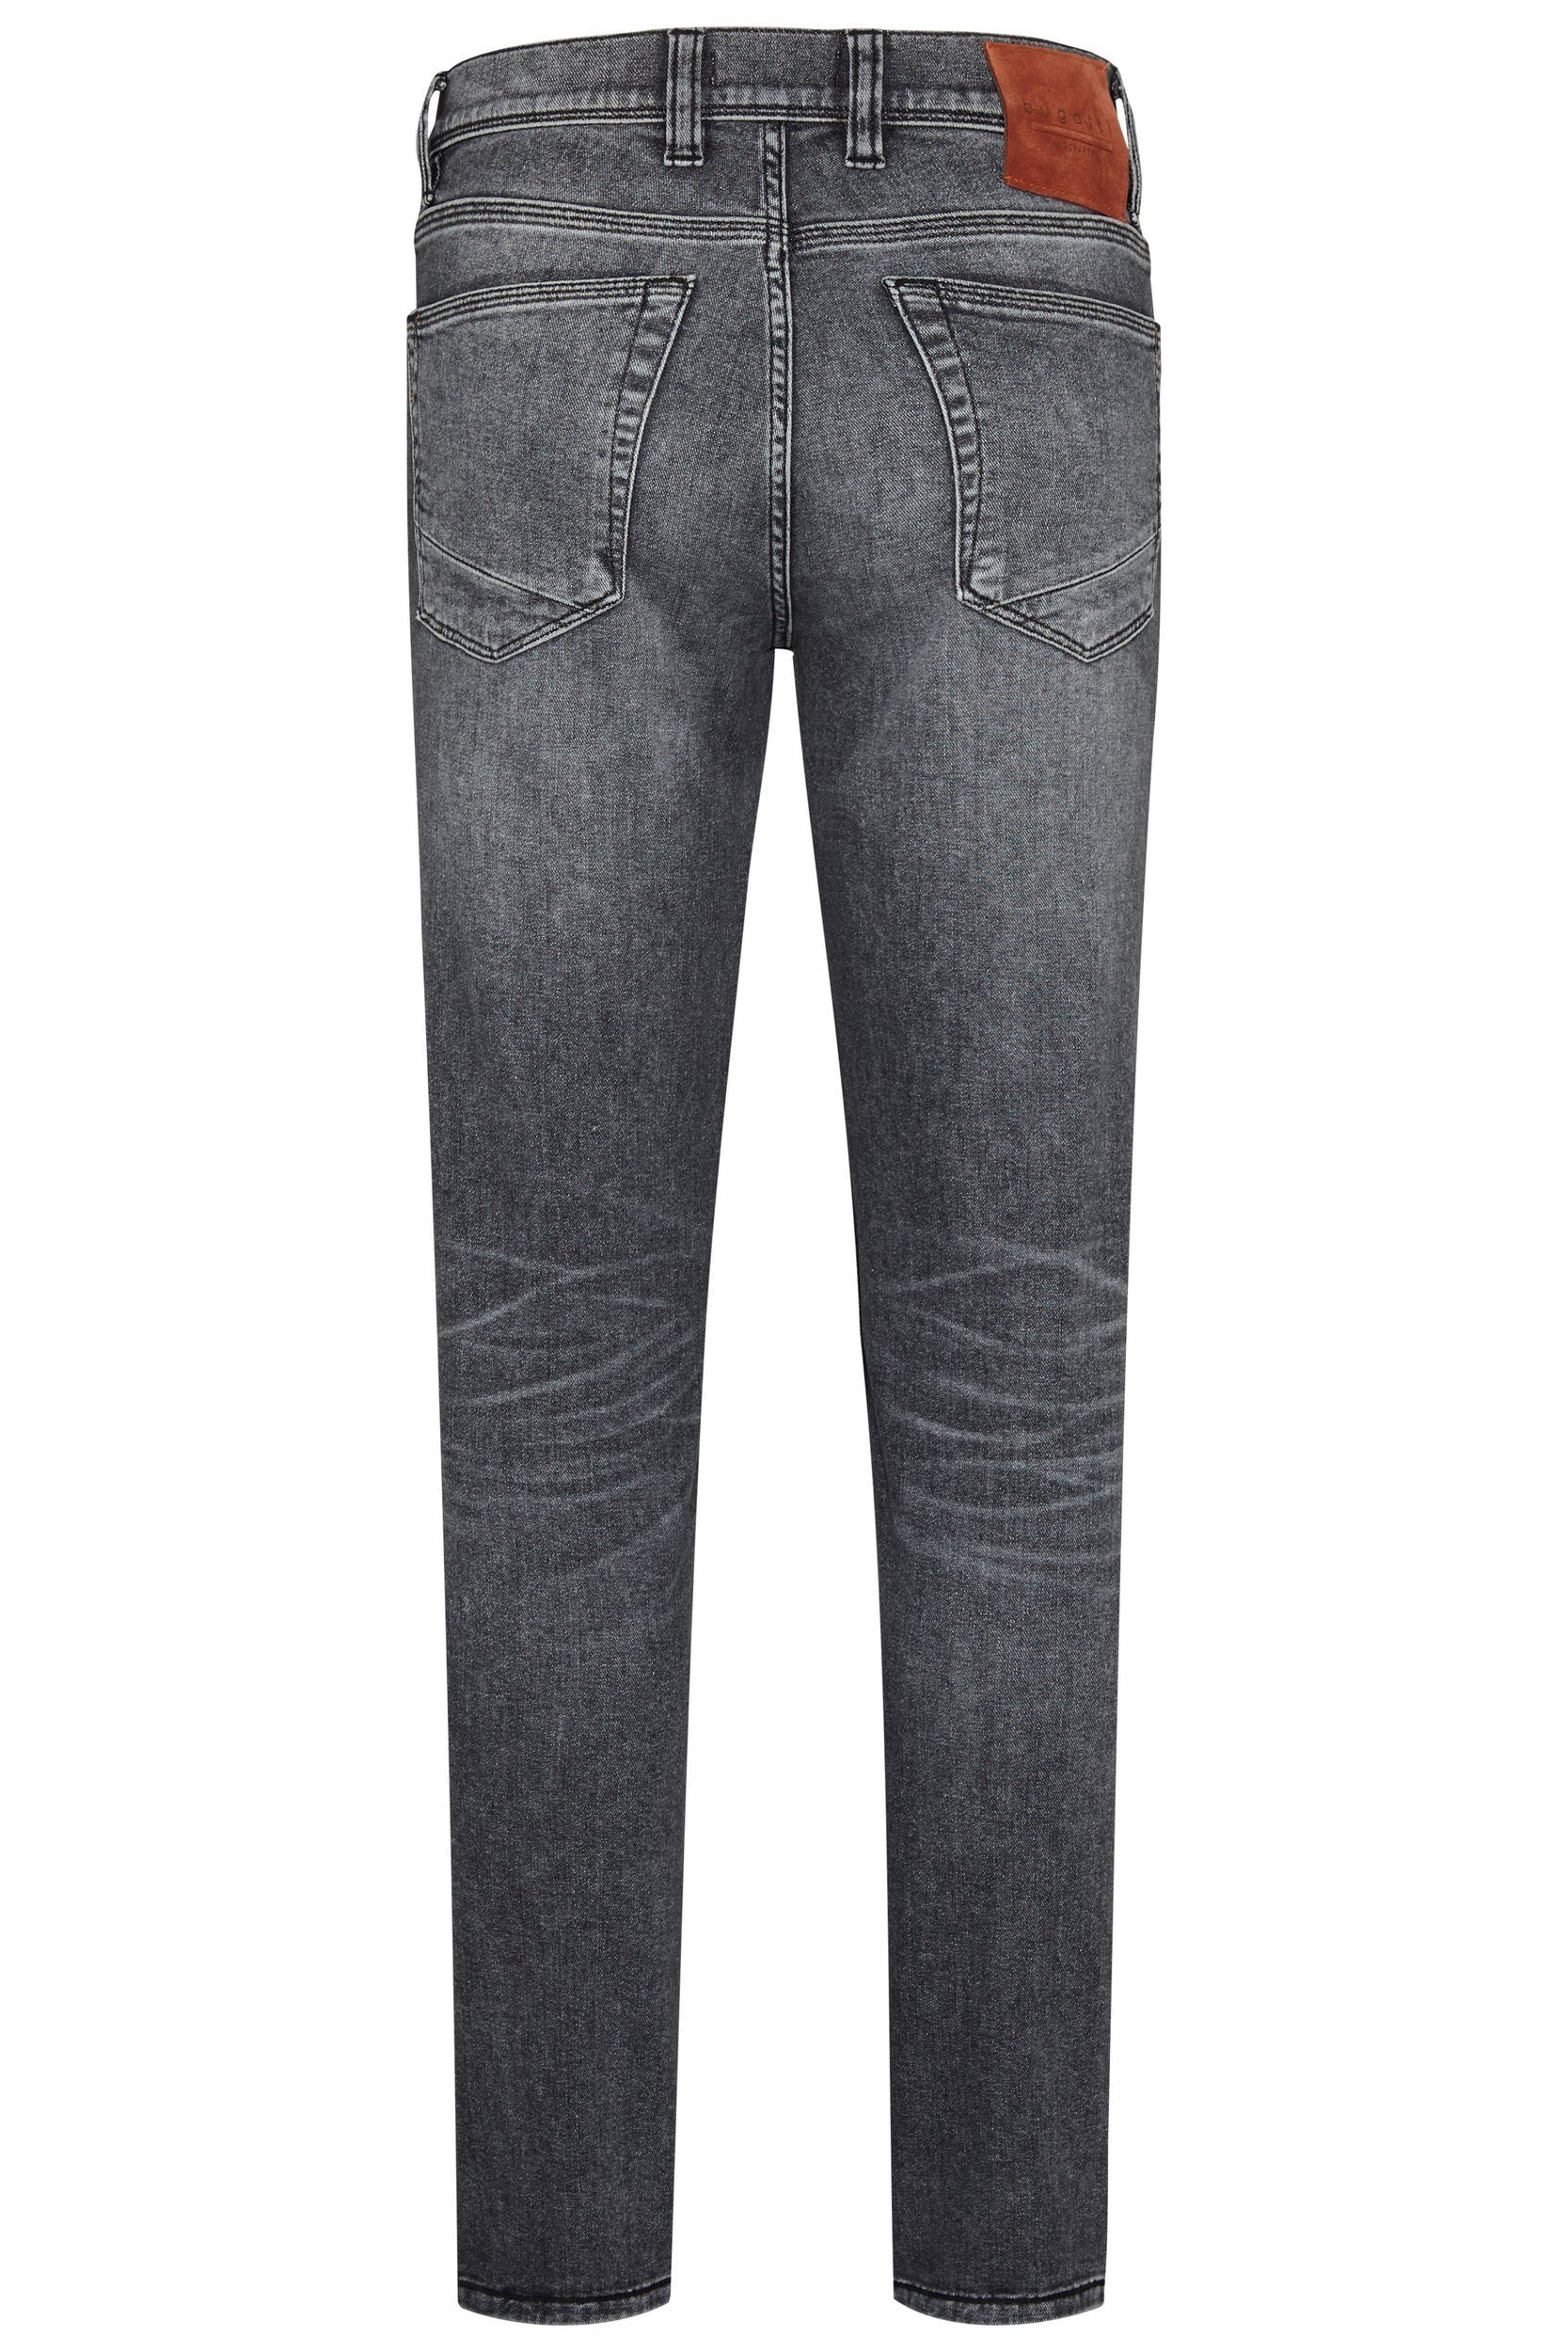 5-Pocket-Jeans weicher mit Haptik bugatti hellgrau besonders